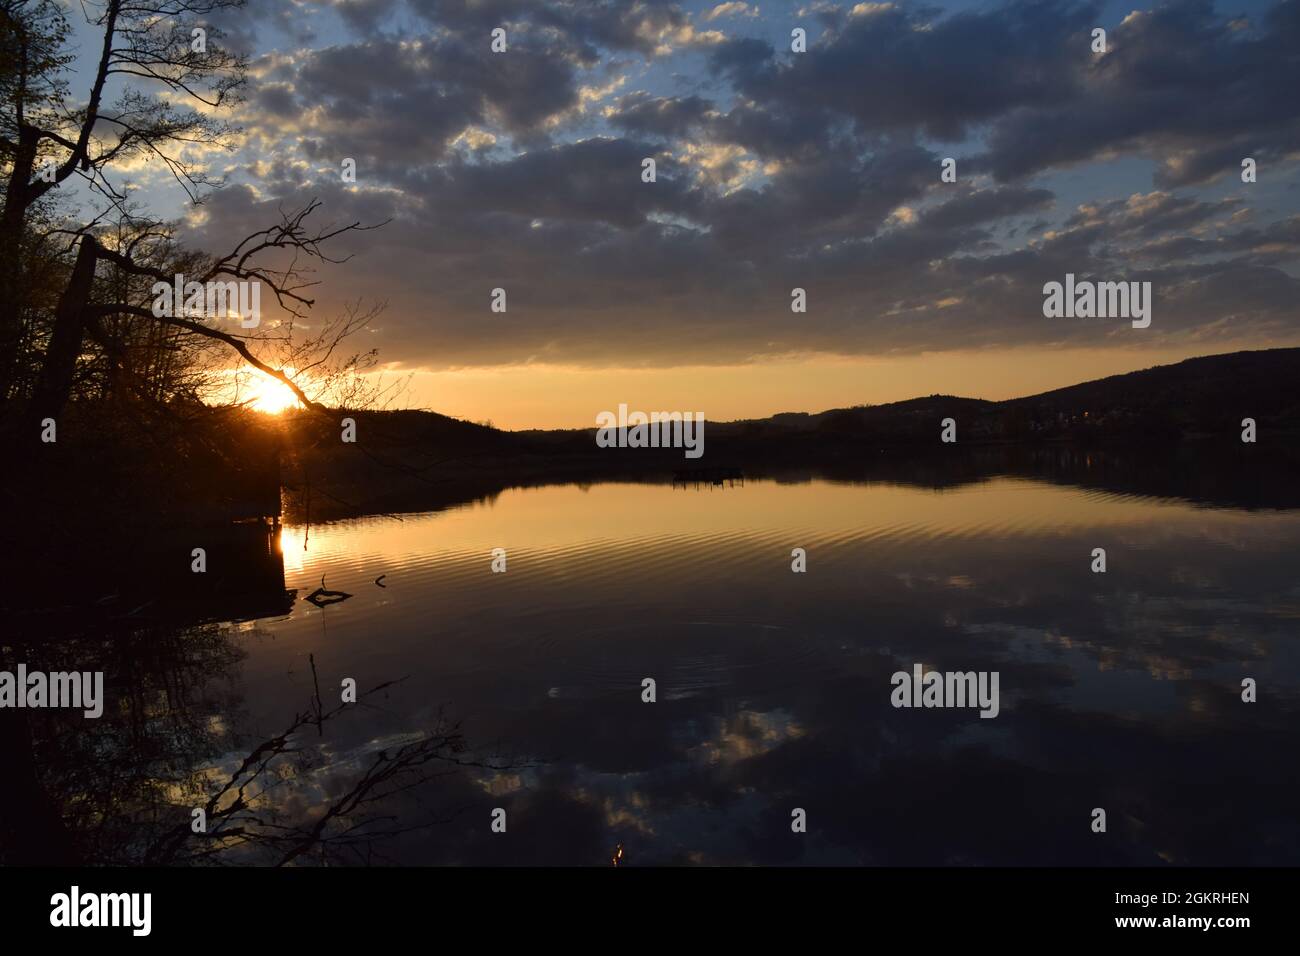 Sonnenuntergang mit wolken und einem baum im wasser gespiegelt am mindelsee bei radolfzell bodensee lago de constance fotografiert mit der nikond3300 Foto de stock